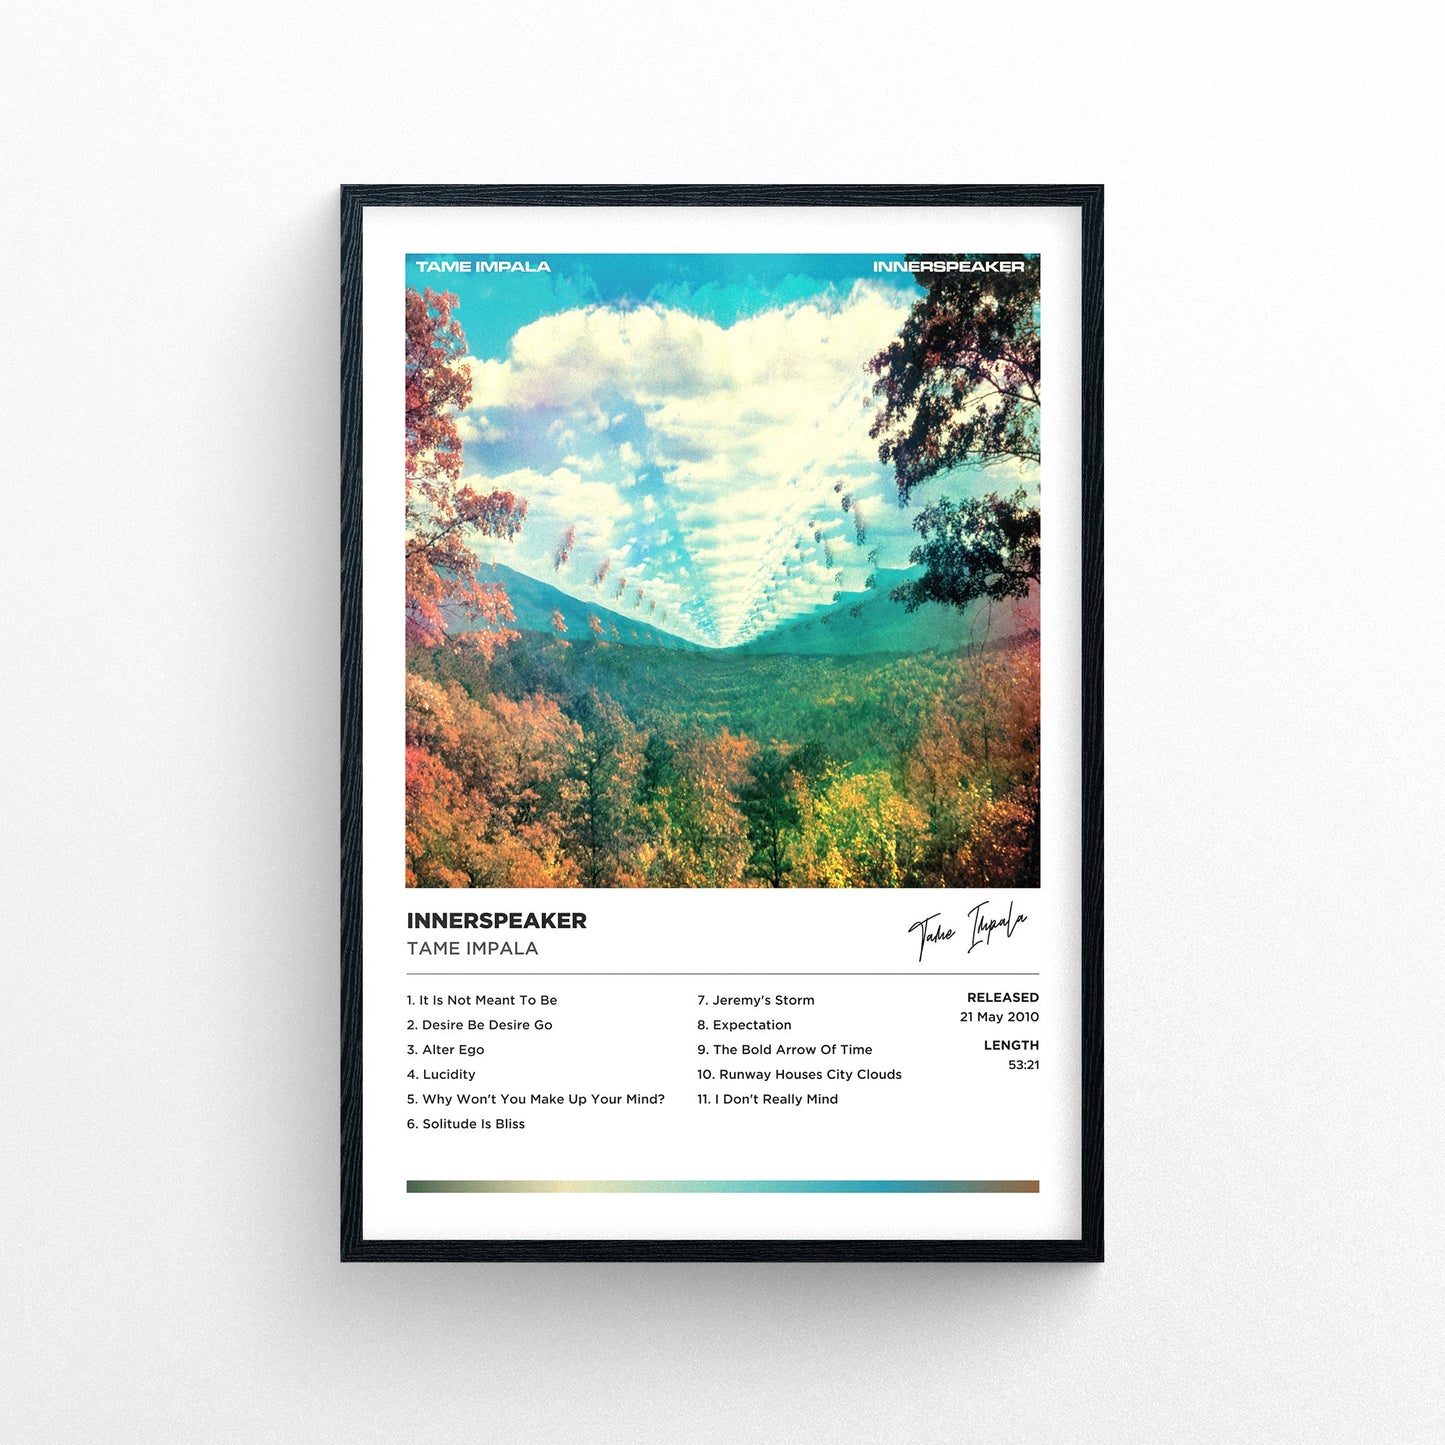 Tame Impala - Innerspeaker Framed Poster Print | Polaroid Style | Album Cover Artwork